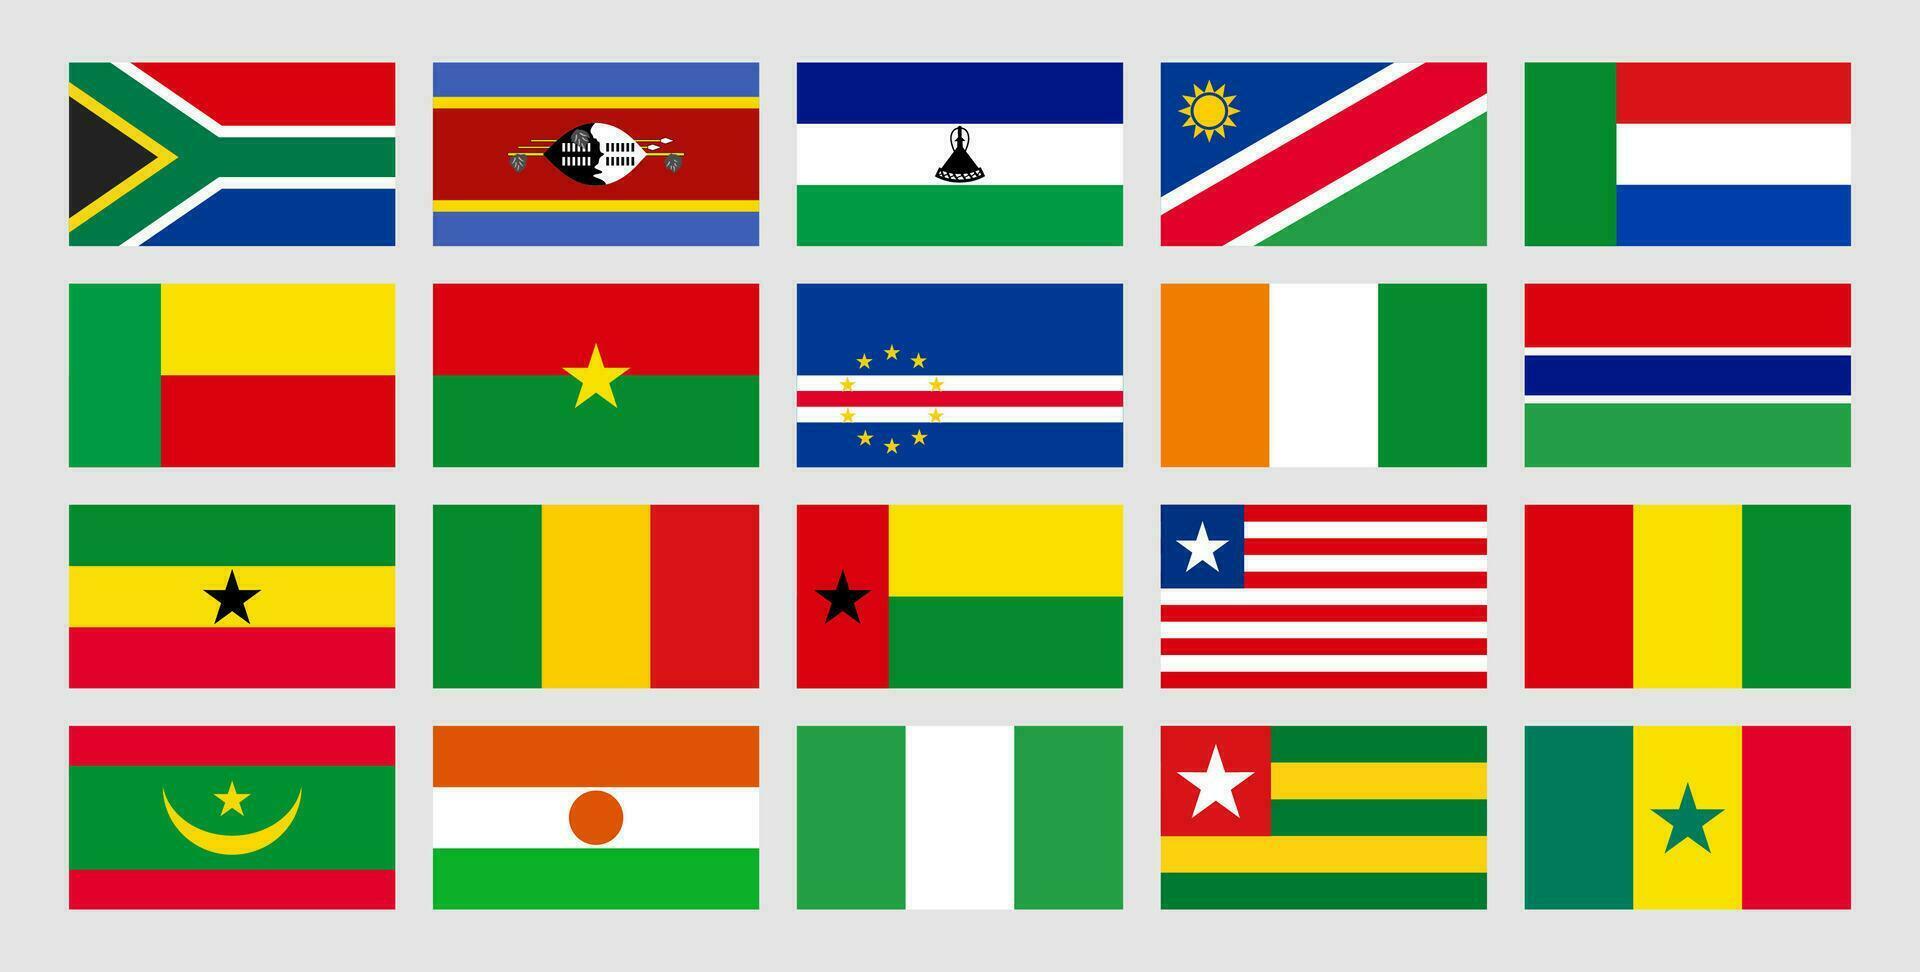 reeks vlaggen van zuidelijk en western Afrika, Botswana, eswatini, Lesotho, Namibië, zuiden Afrika, Benin, Burkina faso, kaap verde, cote d ivoor, Gambia, Ghana, Guinea, Liberia, Mali, Mauritanië, Niger vector